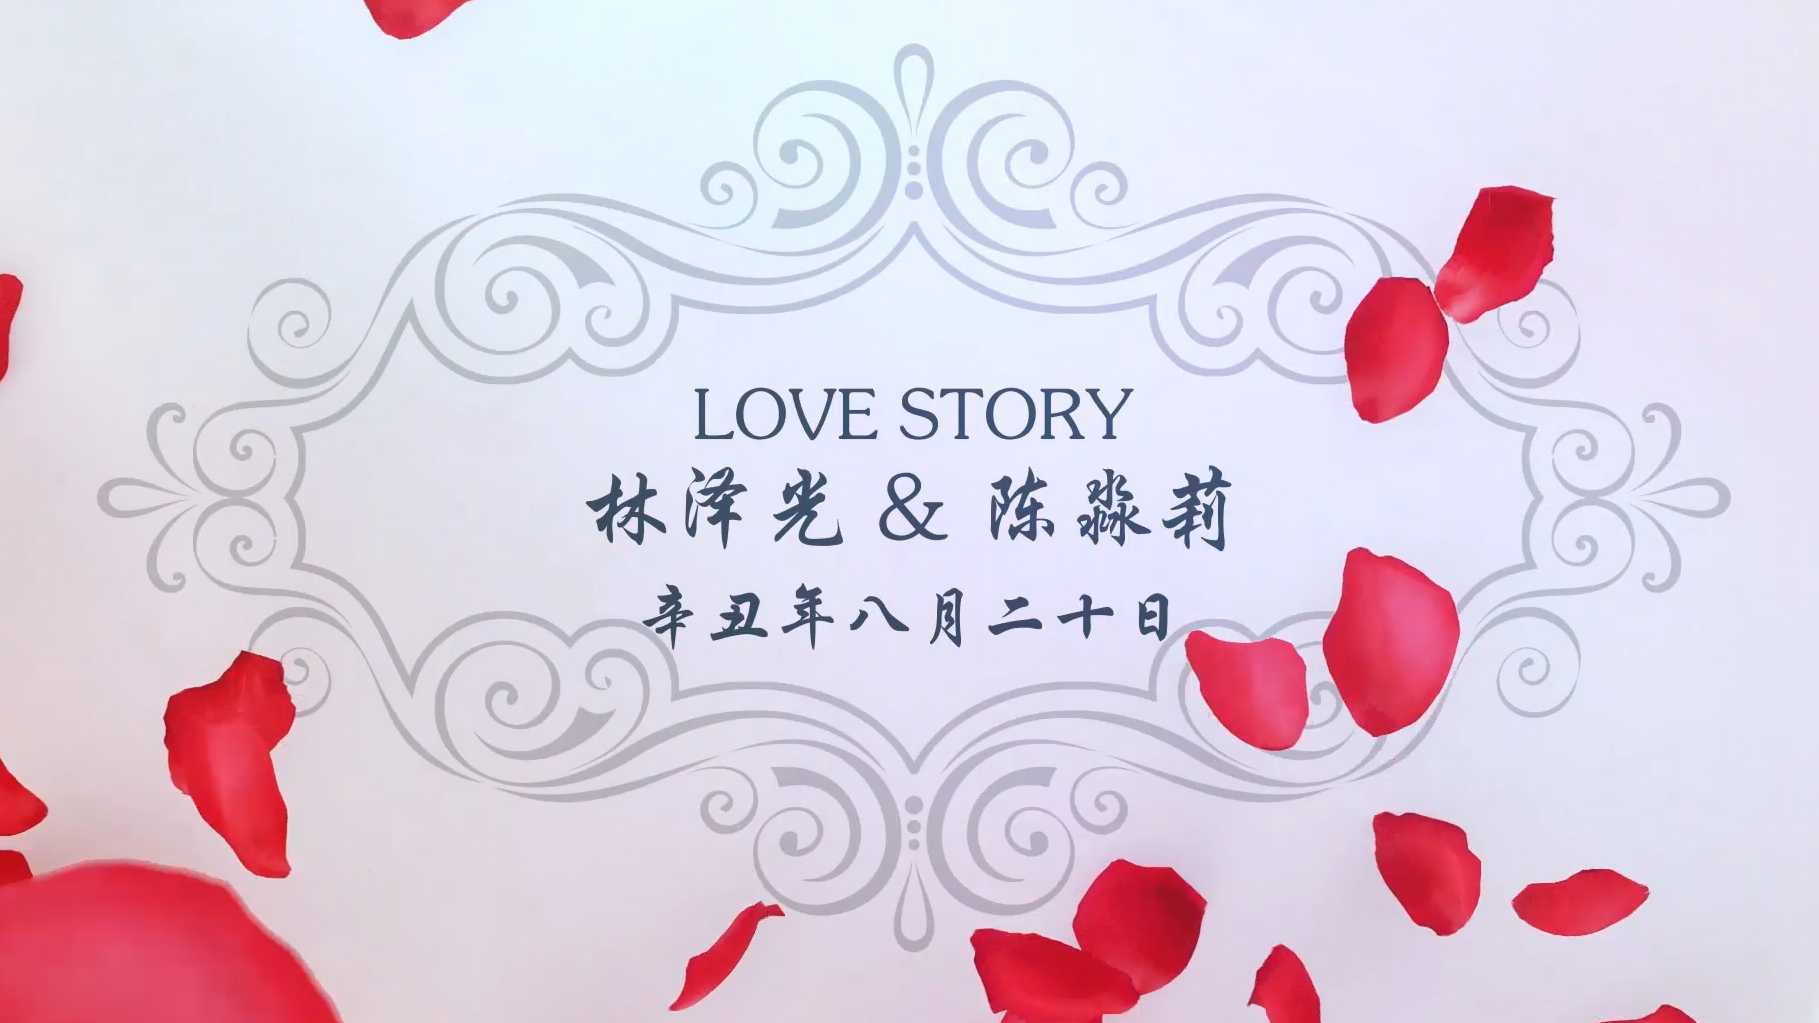 辛丑年八月二十日丨林泽光&陈淼莉 婚礼全程视频